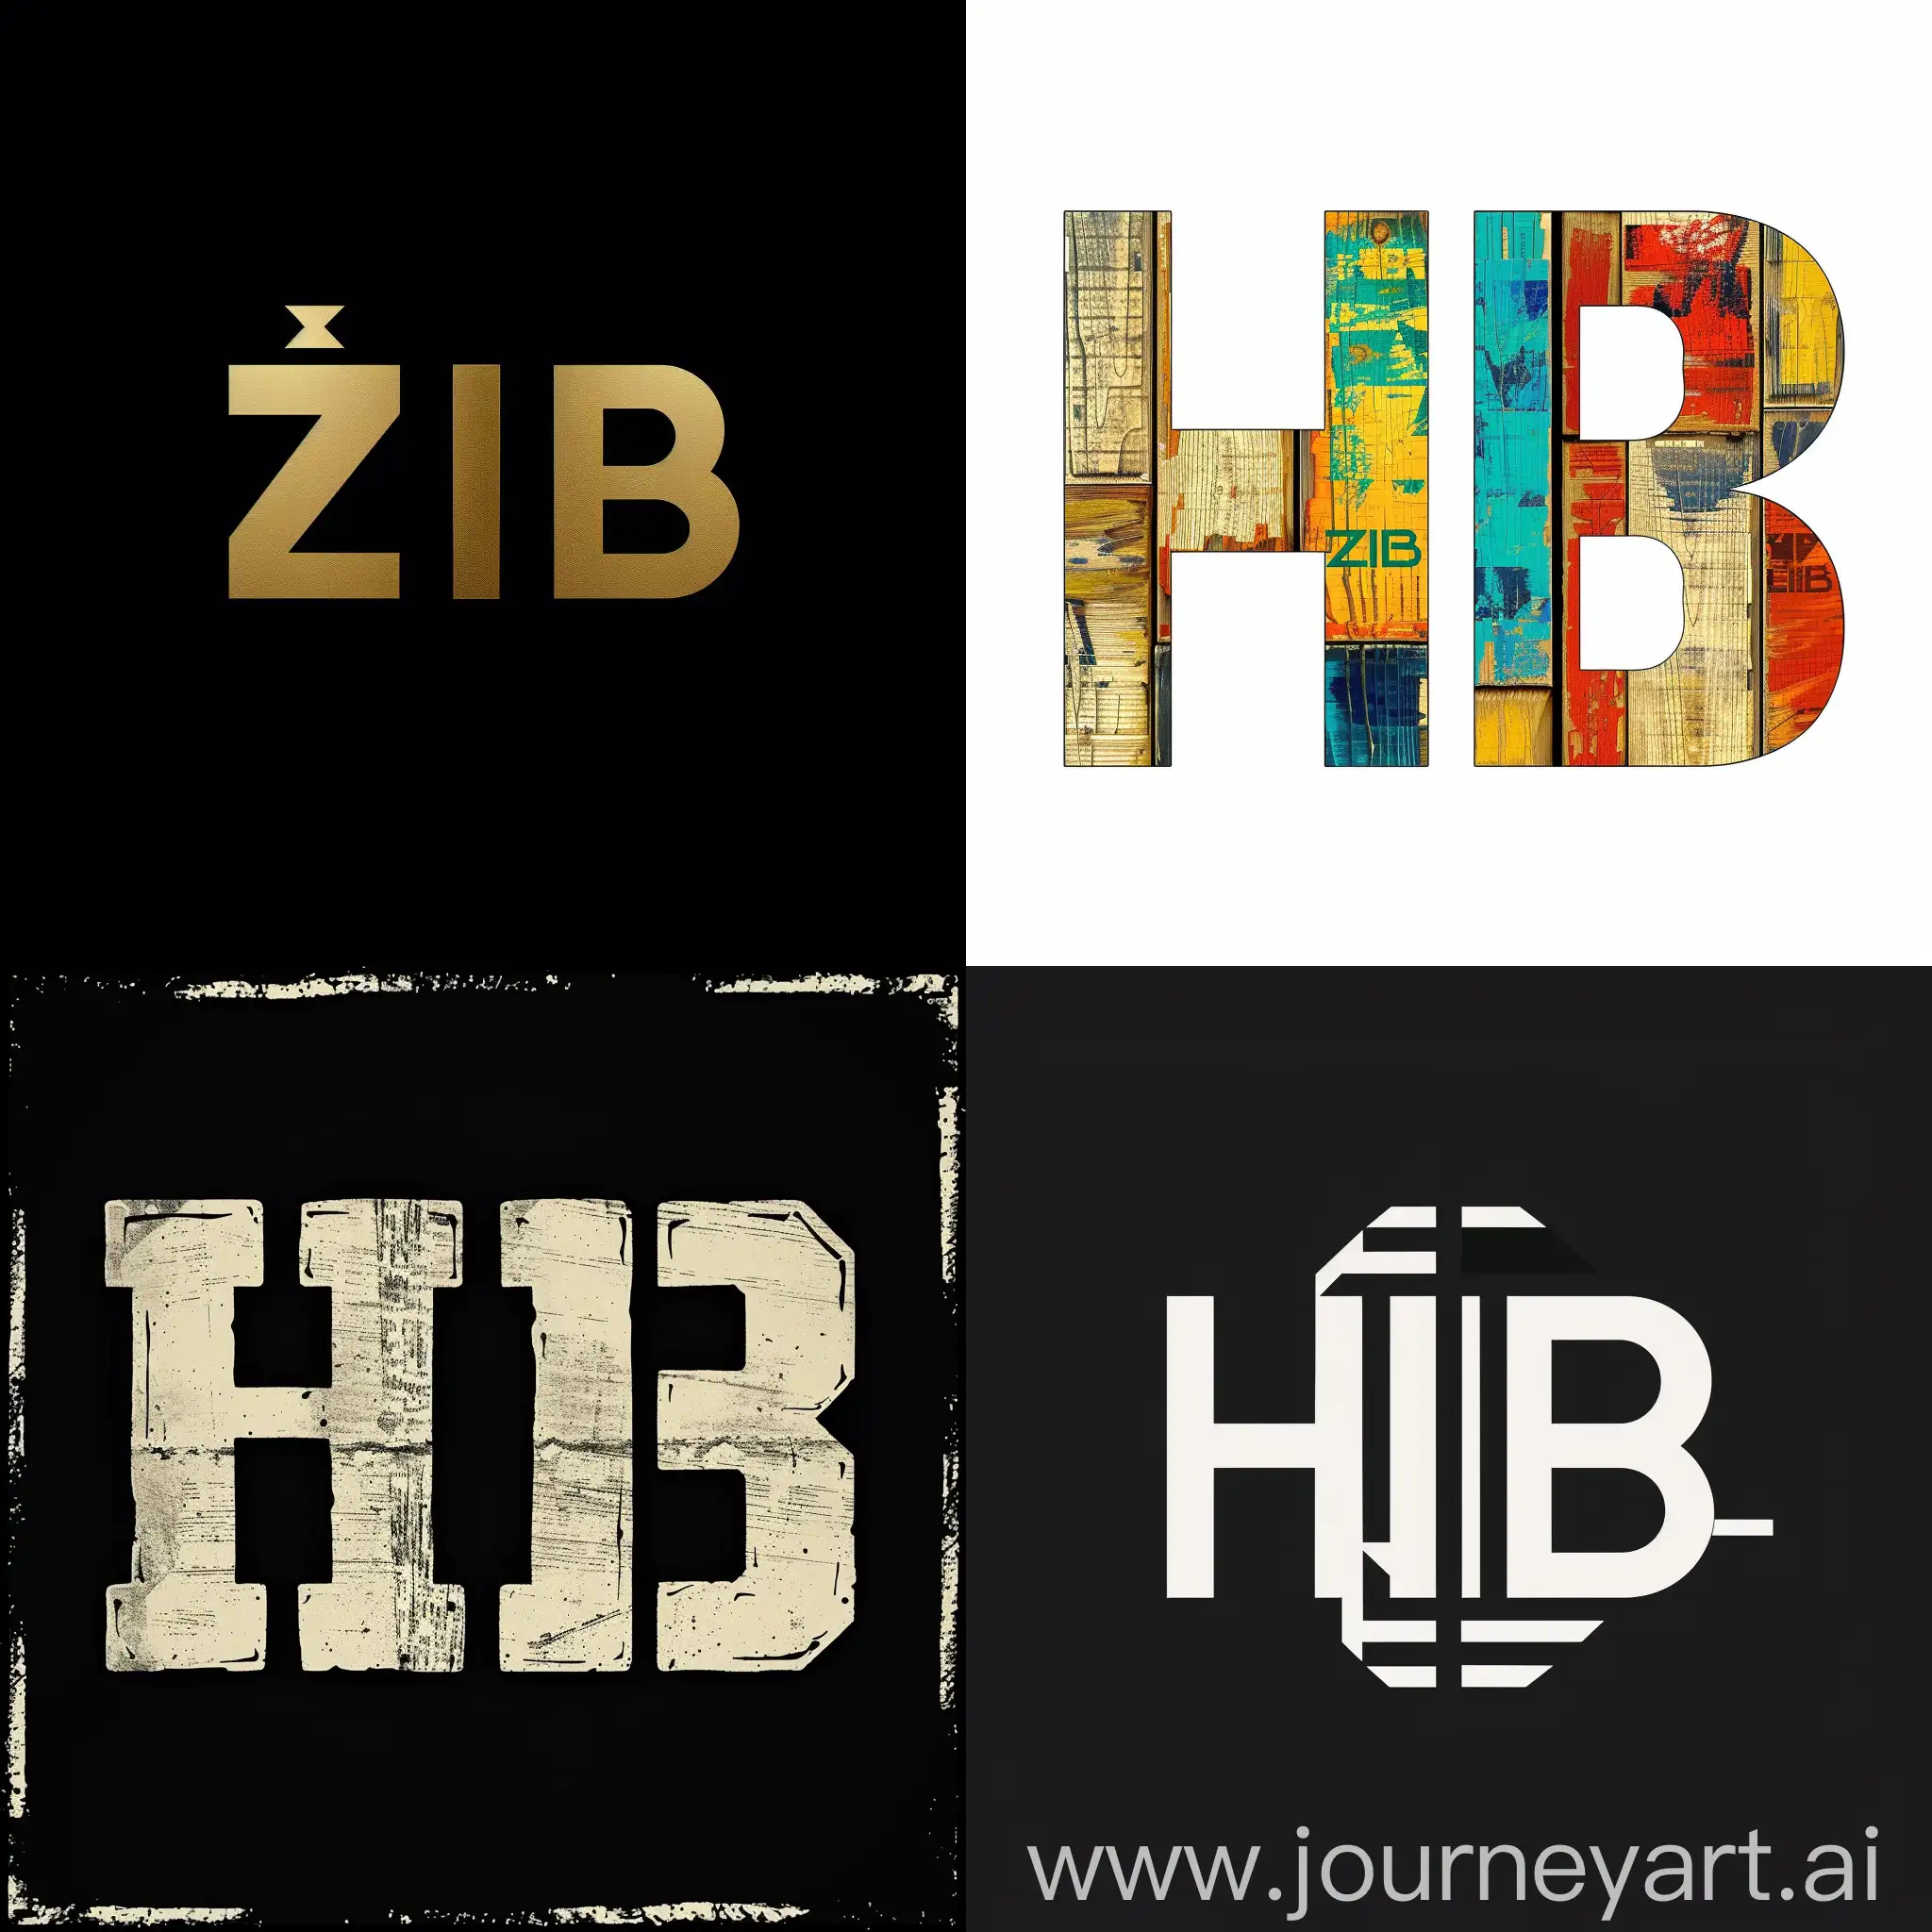 Adapted-Zeit-im-Bild-ZIB-Logo-with-HIB-Letters-Version-6